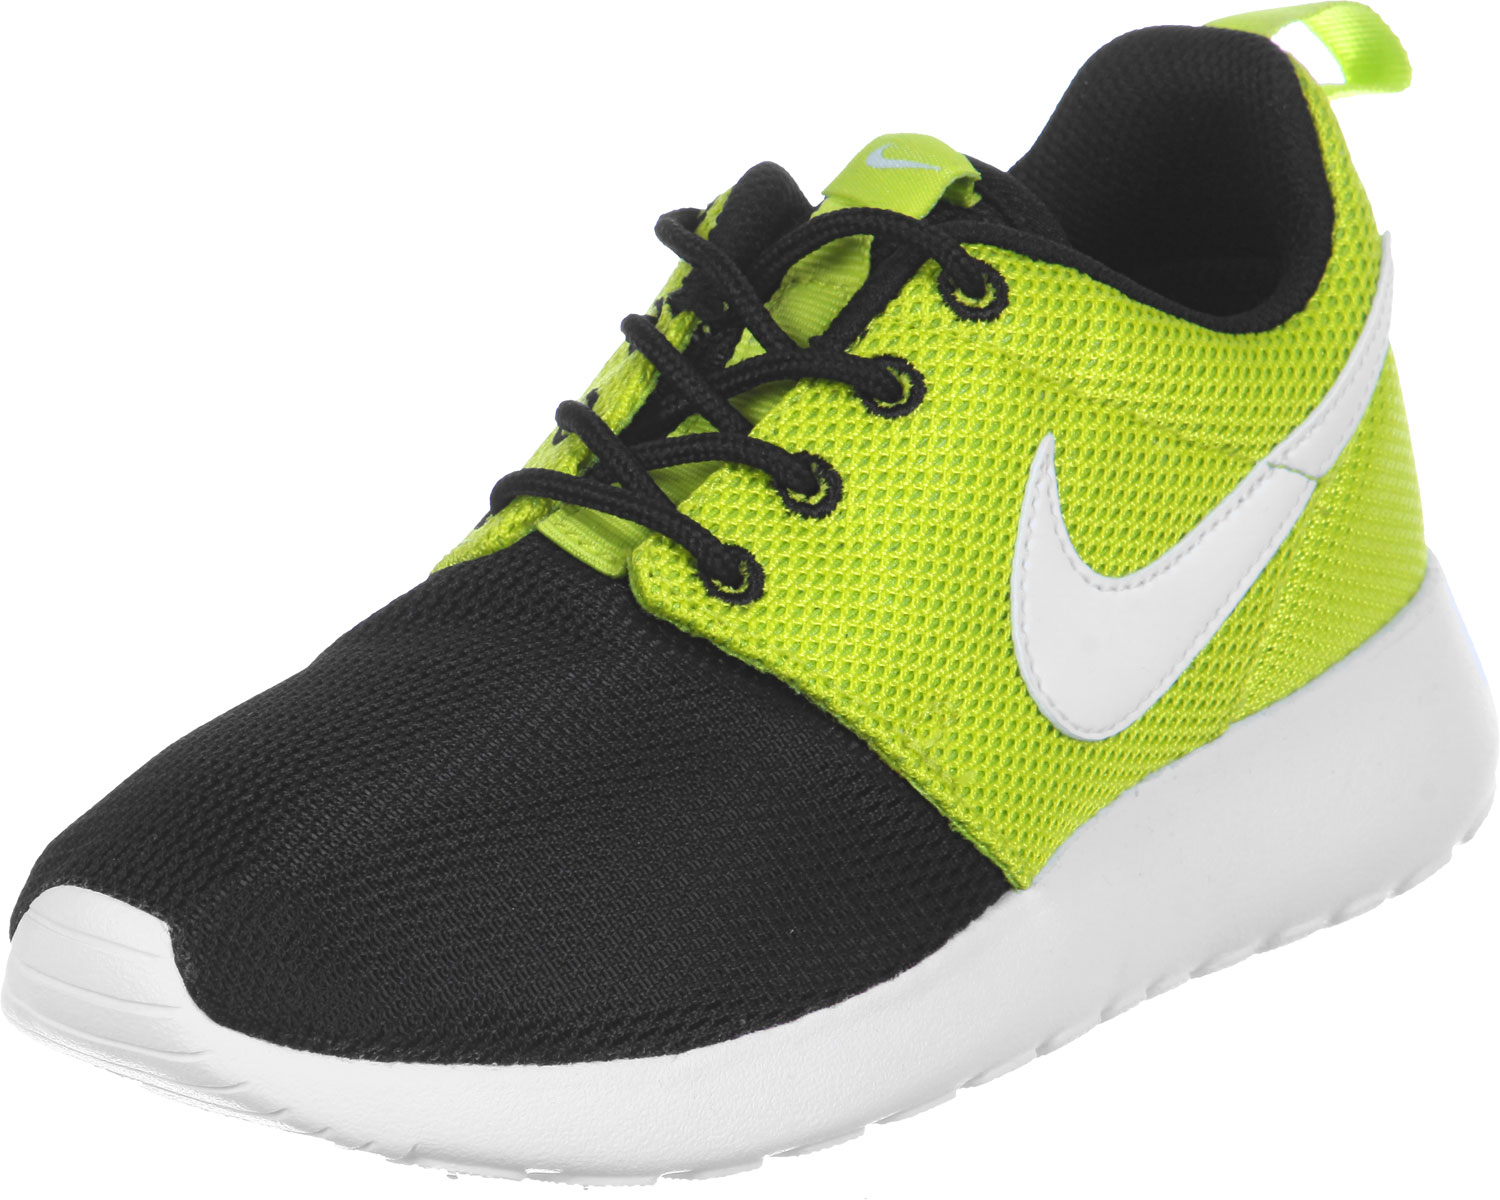 nike roshe run youth gs chaussures noir vert, Nike Roshe Run noire vert Homme Running Nike Shose 110418 1880